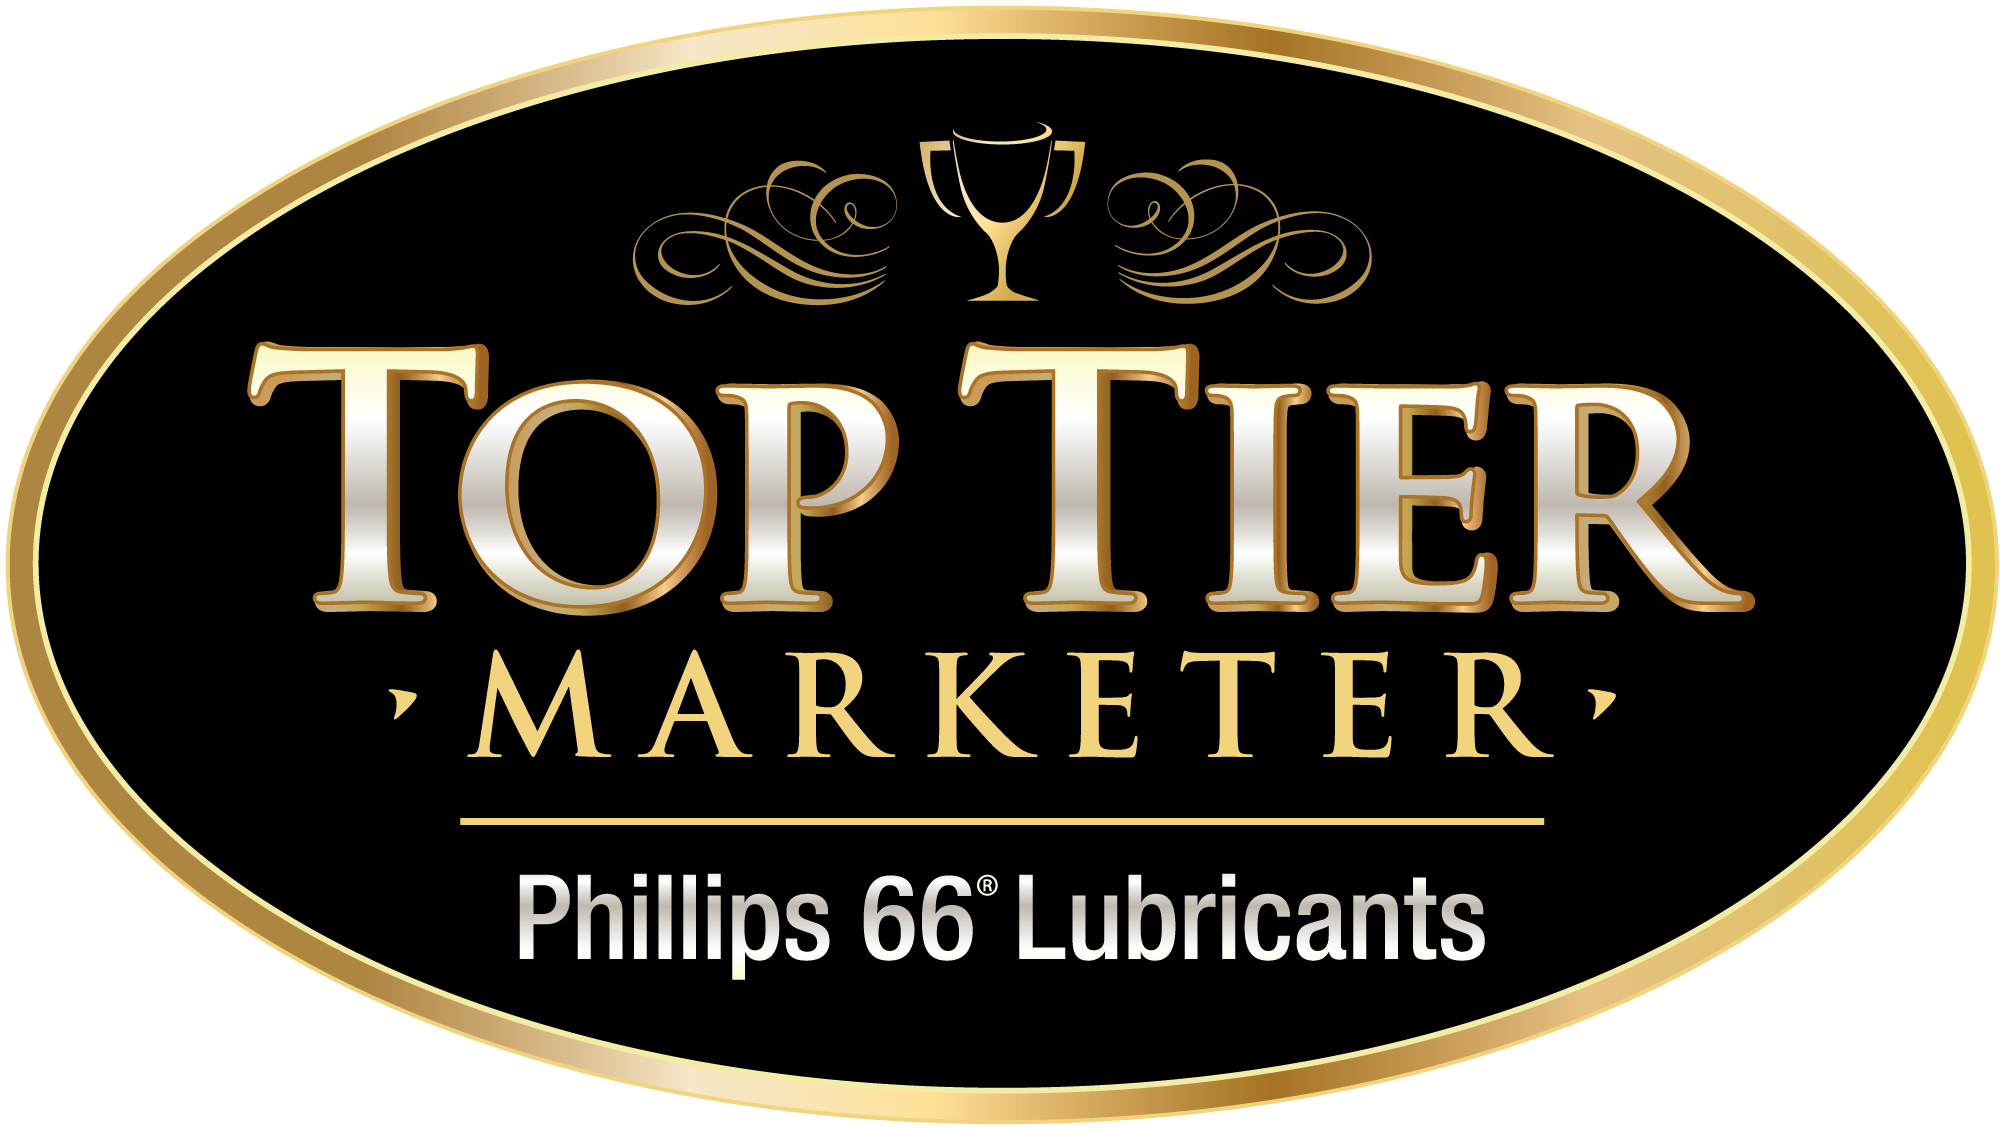 TOP Tier Marketer Phillips 66 Lubricants